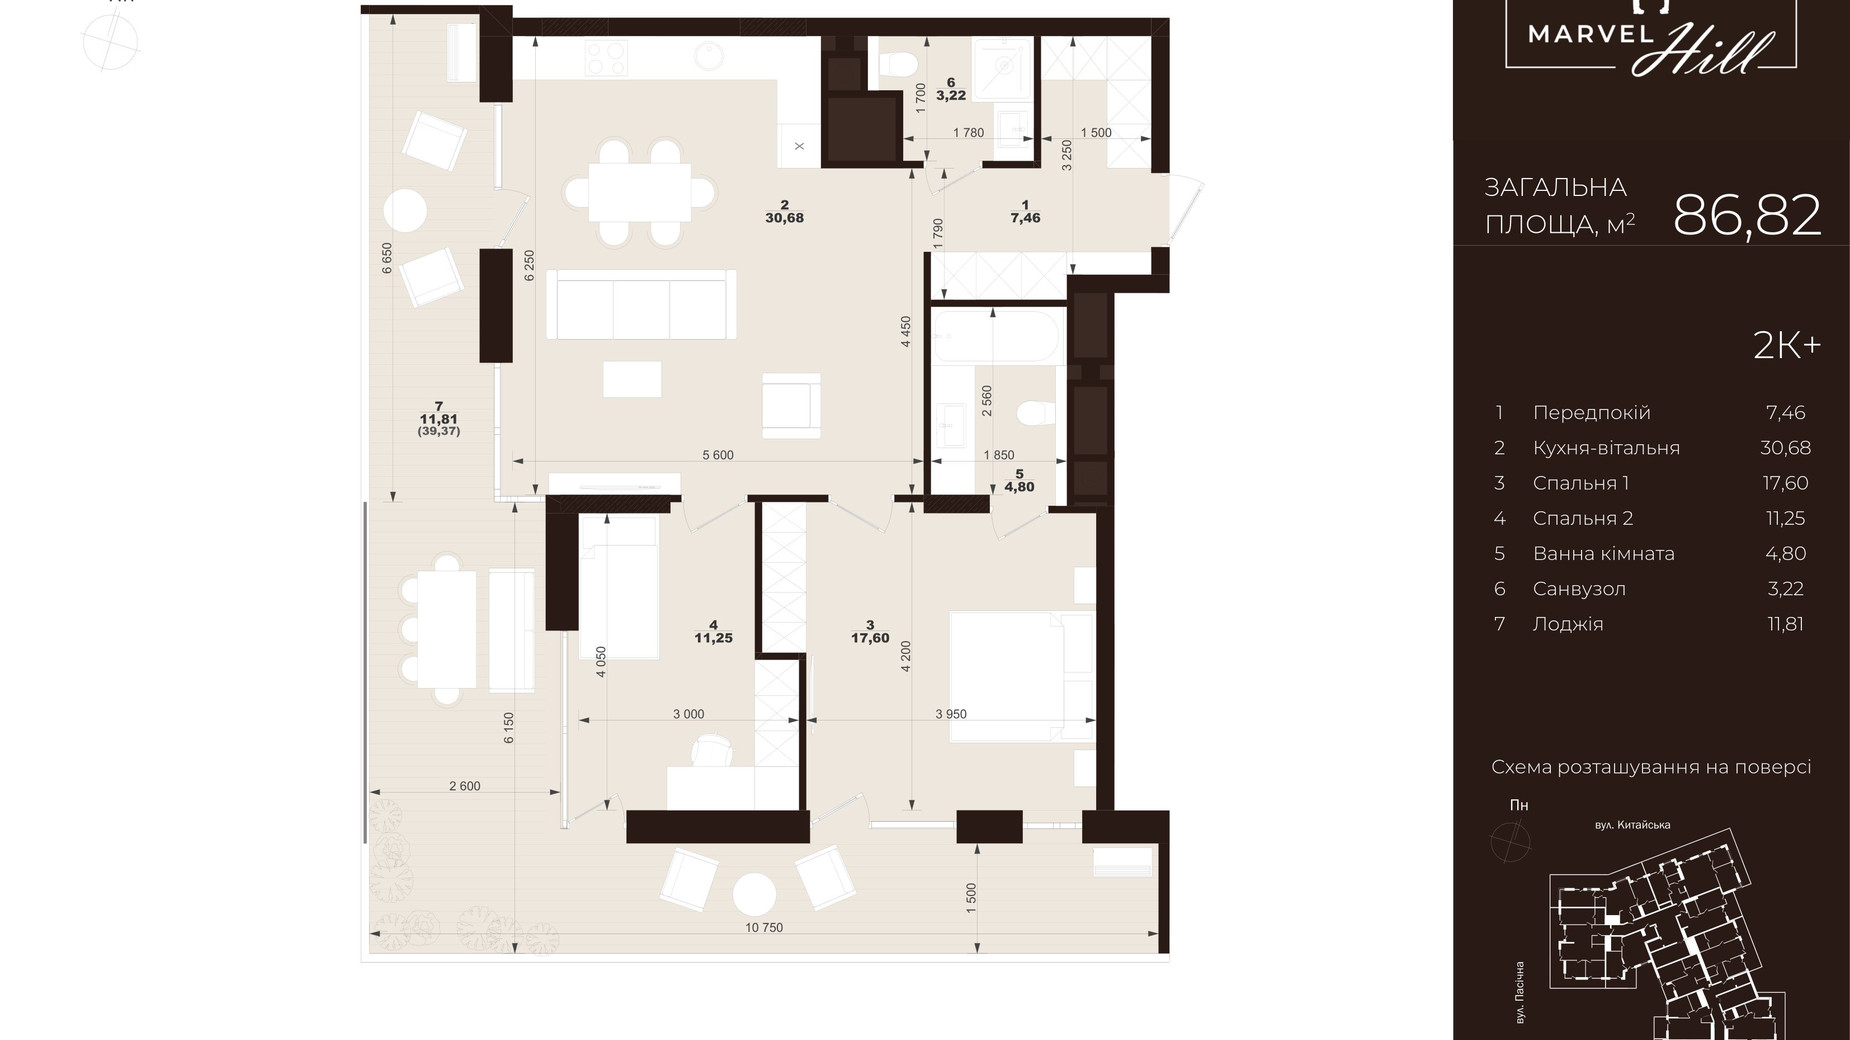 Планировка 2-комнатной квартиры в ЖК Marvel Hill 86.82 м², фото 602103